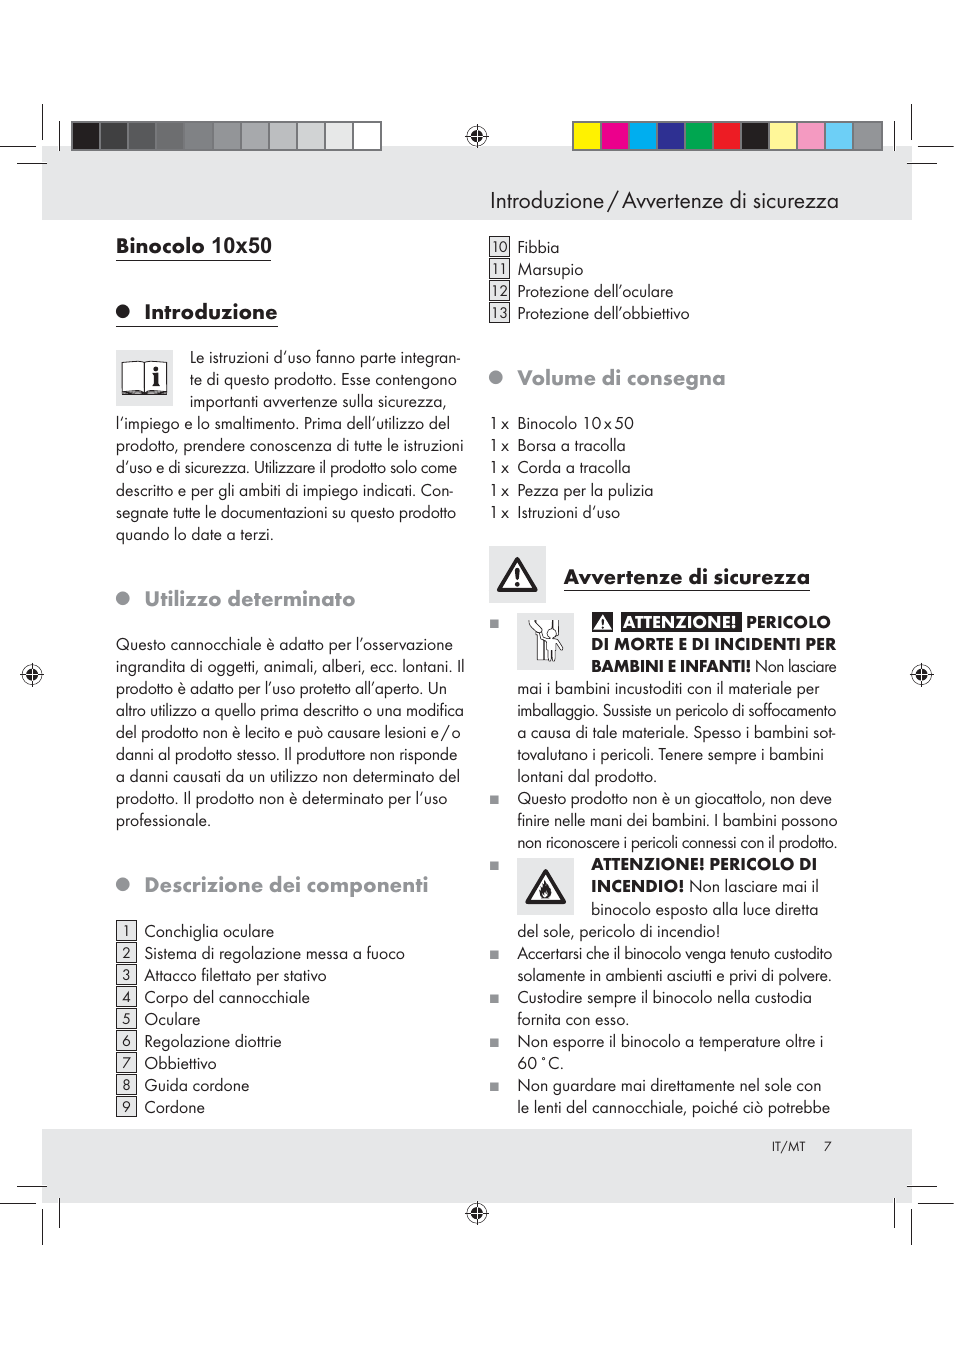 Introduzione / avvertenze di sicurezza, Binocolo, Introduzione | Auriol  BINOCULARS 10x50 User Manual | Page 5 / 13